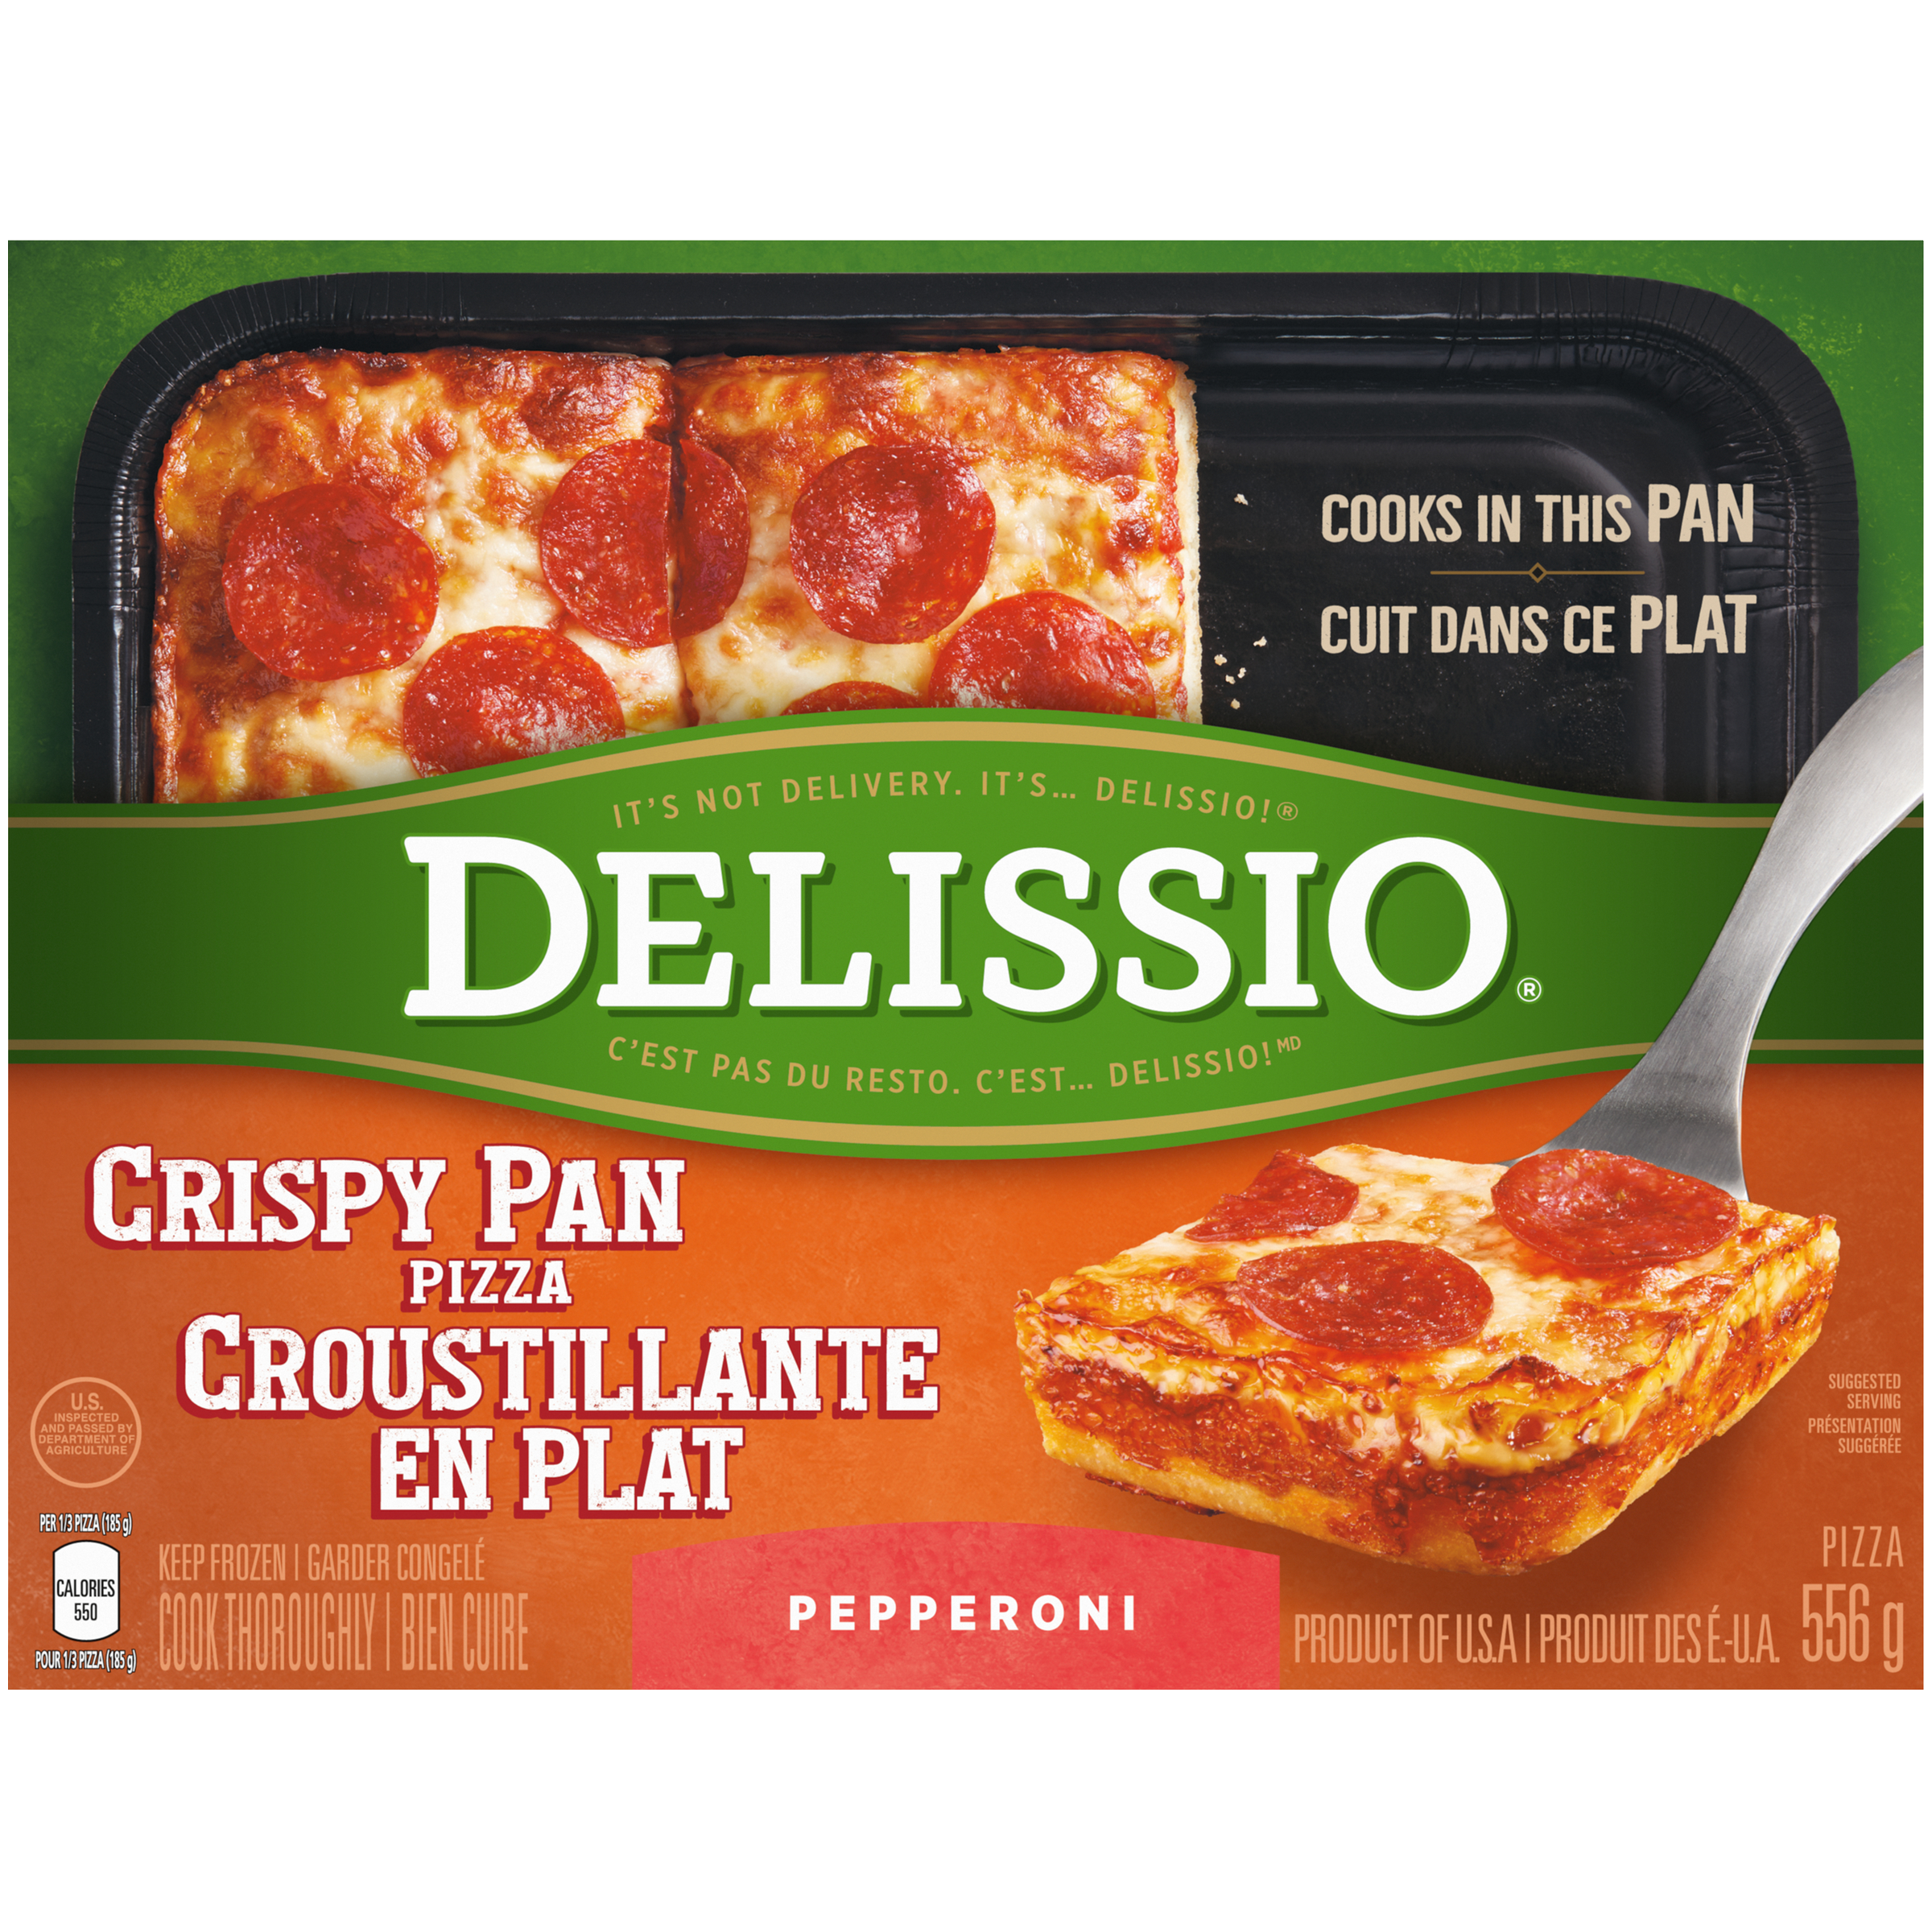 DELISSIO Crispy Pan Pepperoni Pizza, 556 g